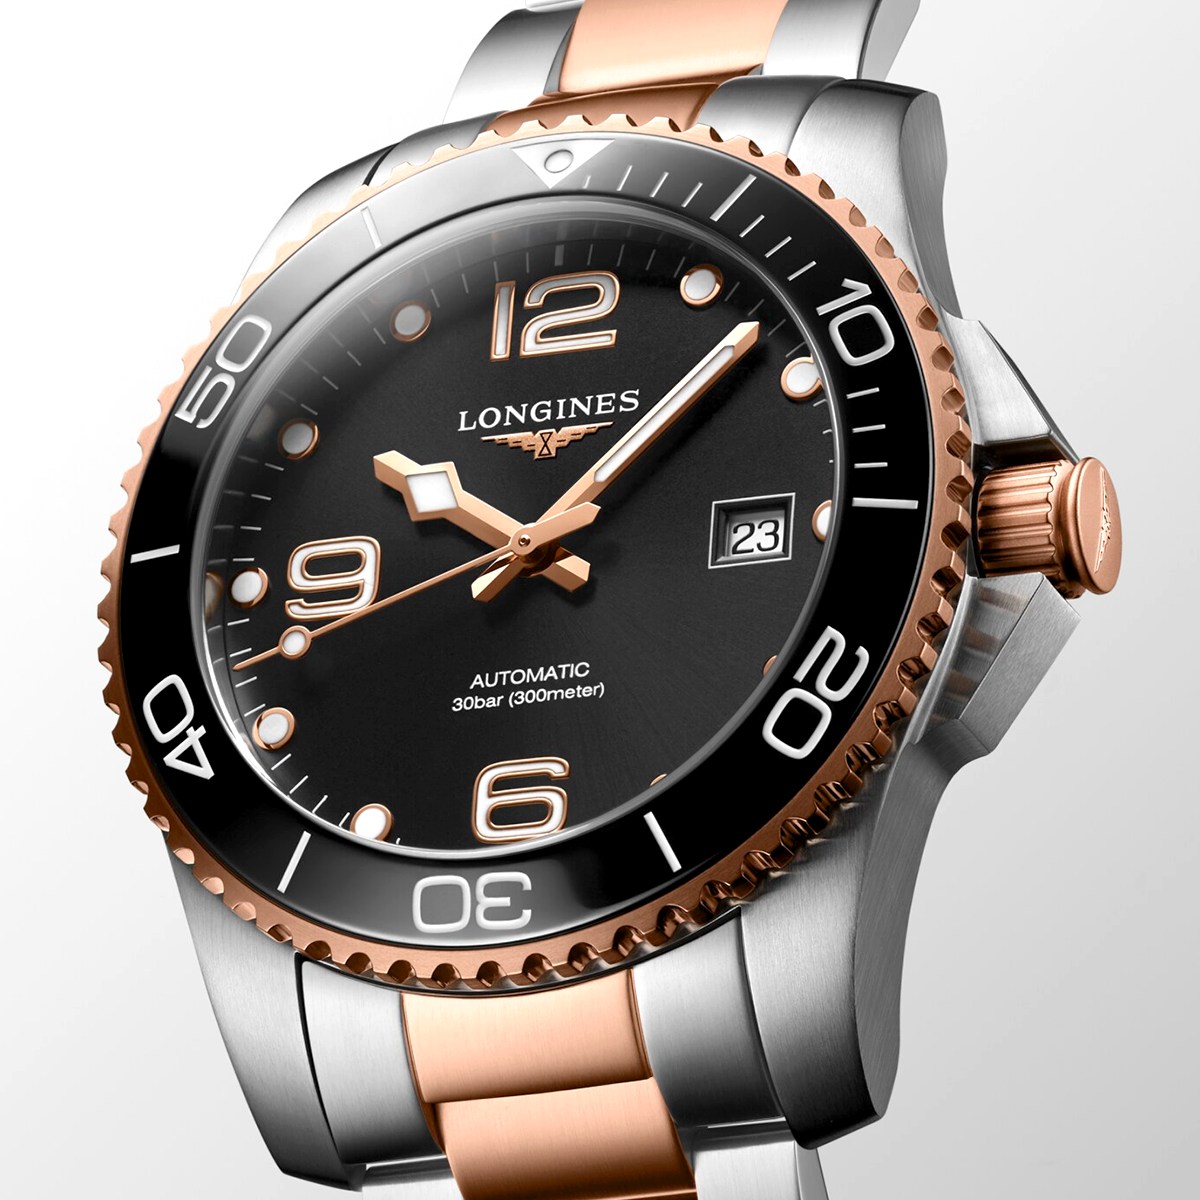 HydroConquest 41mm Two-Tone Black Dial Men's Bracelet Watch